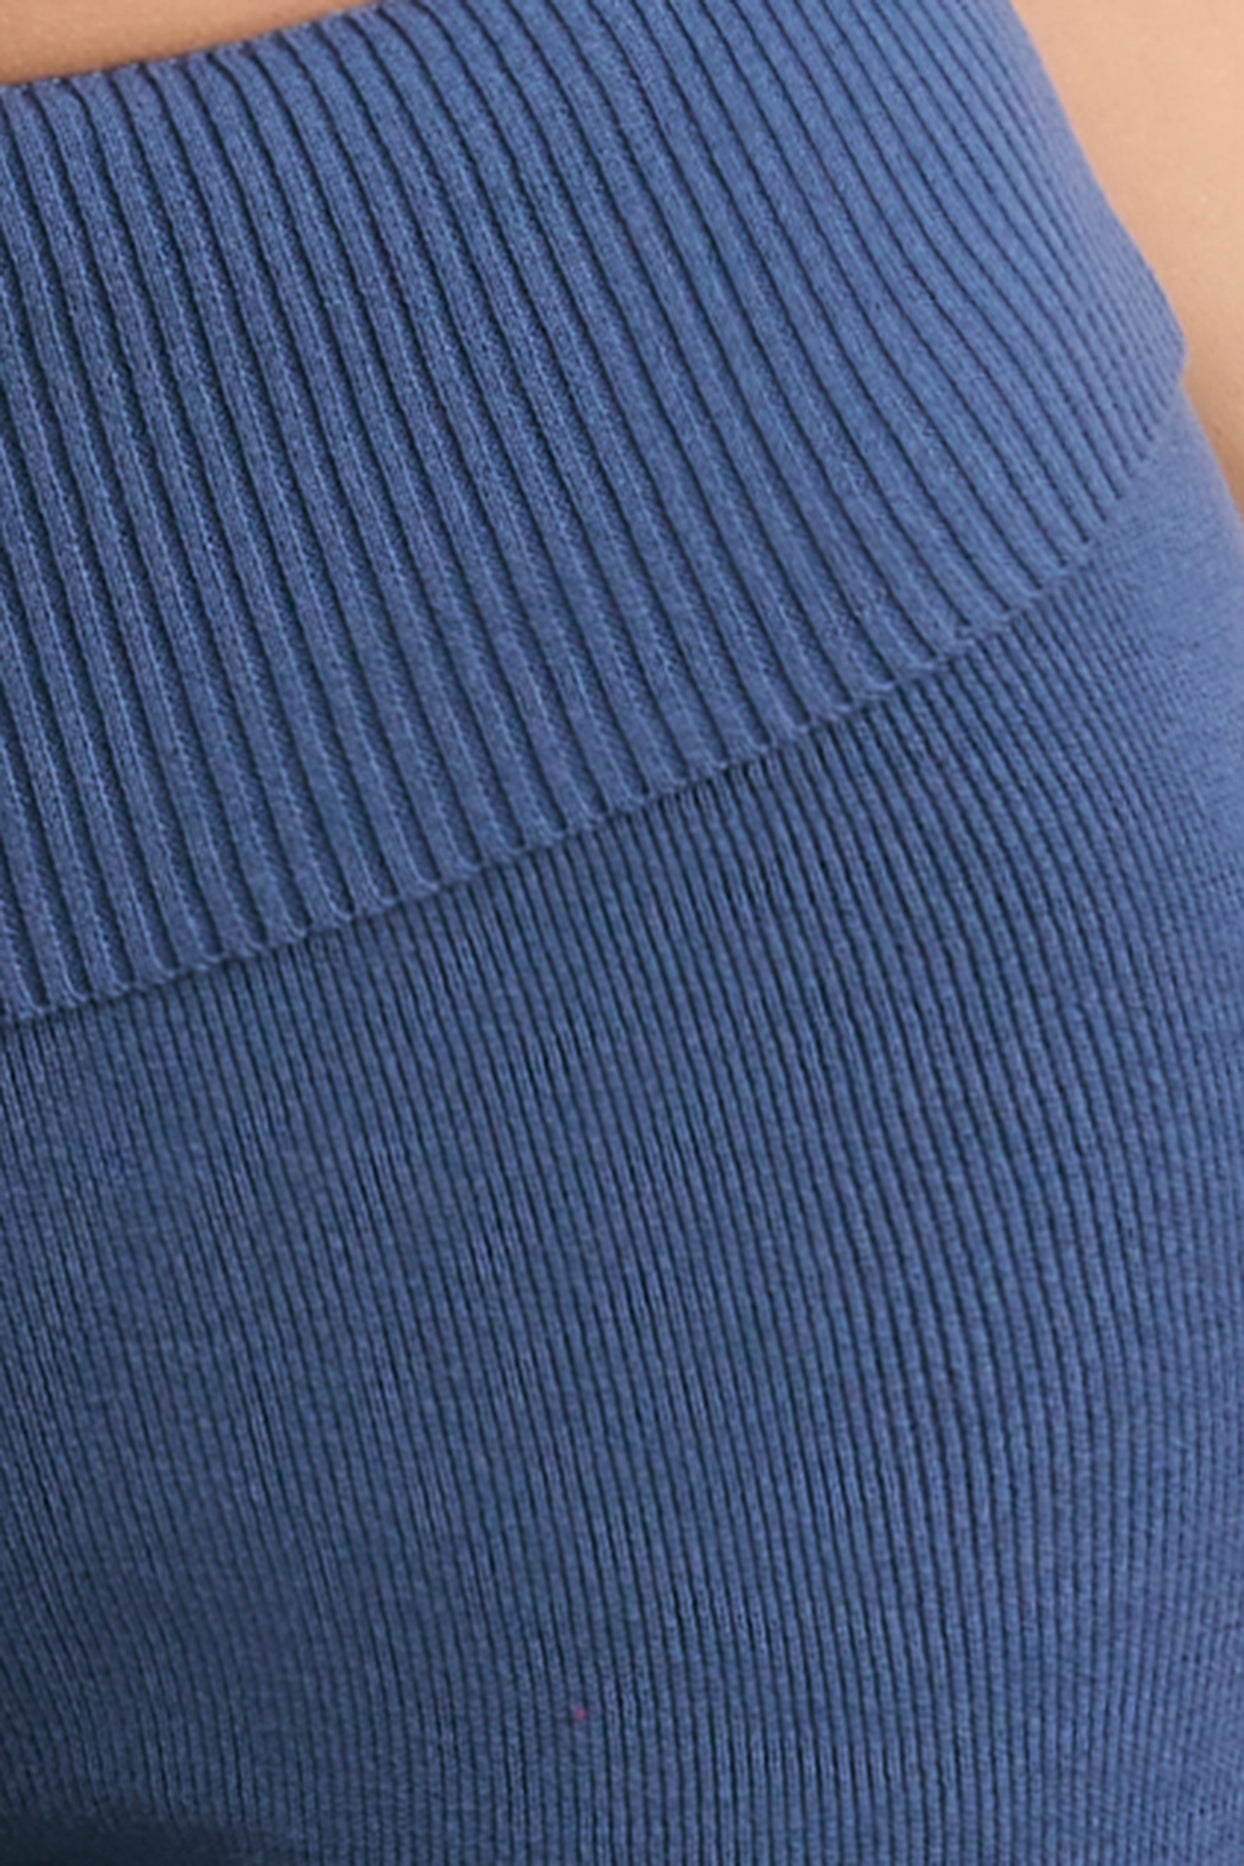 Petite - Pantalon évasé en grosse maille - Bleu marine délavé